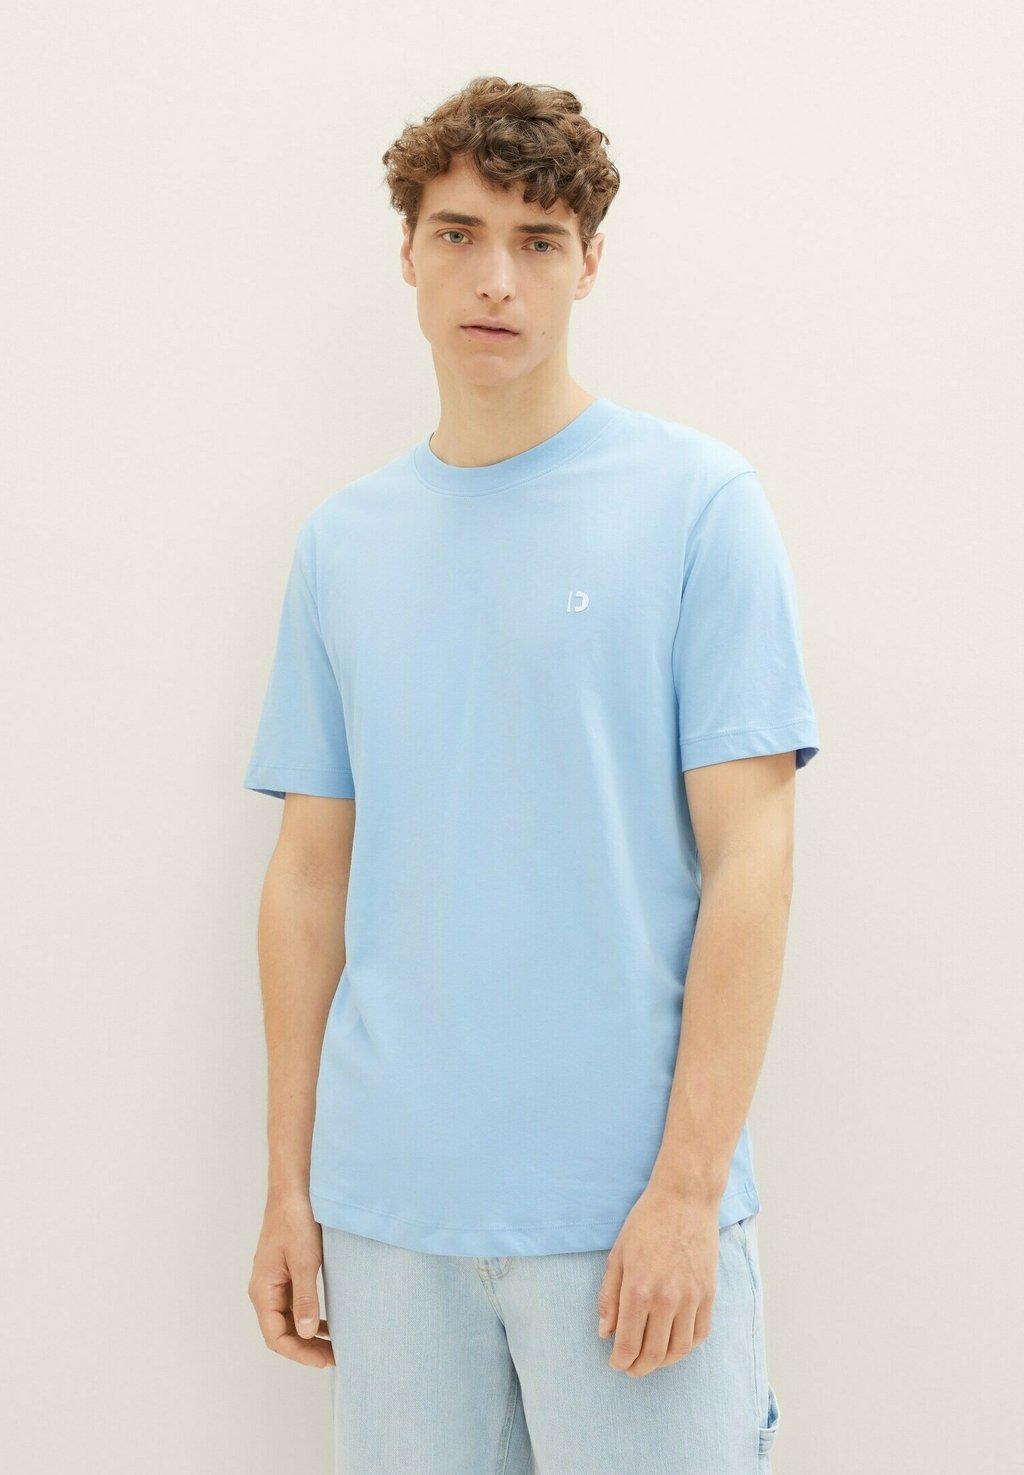 Базовая футболка Tom Tailor, размытый средний синий цвет